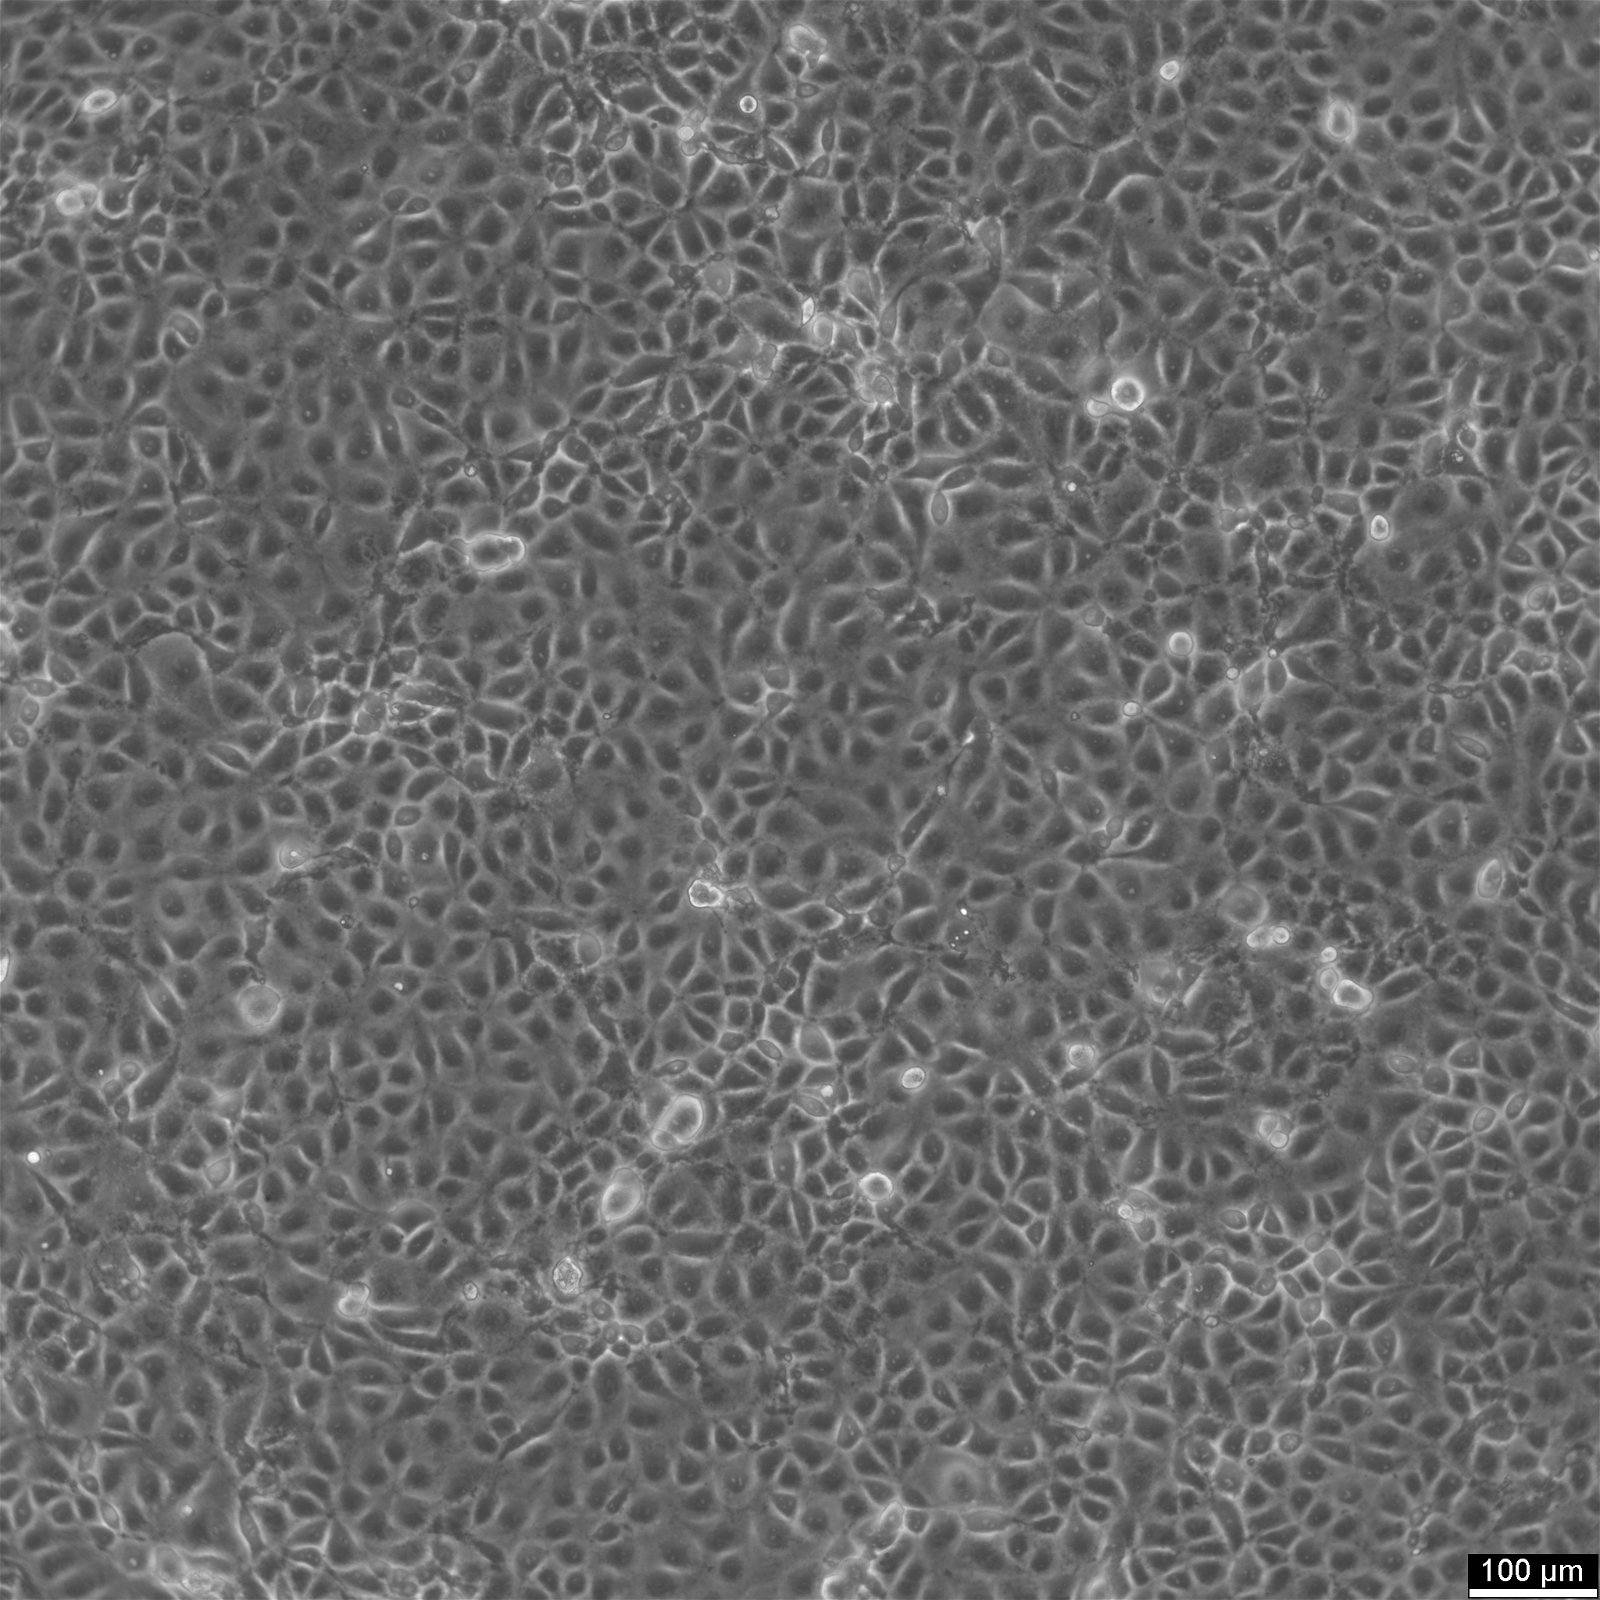 MARC-145-Zellen